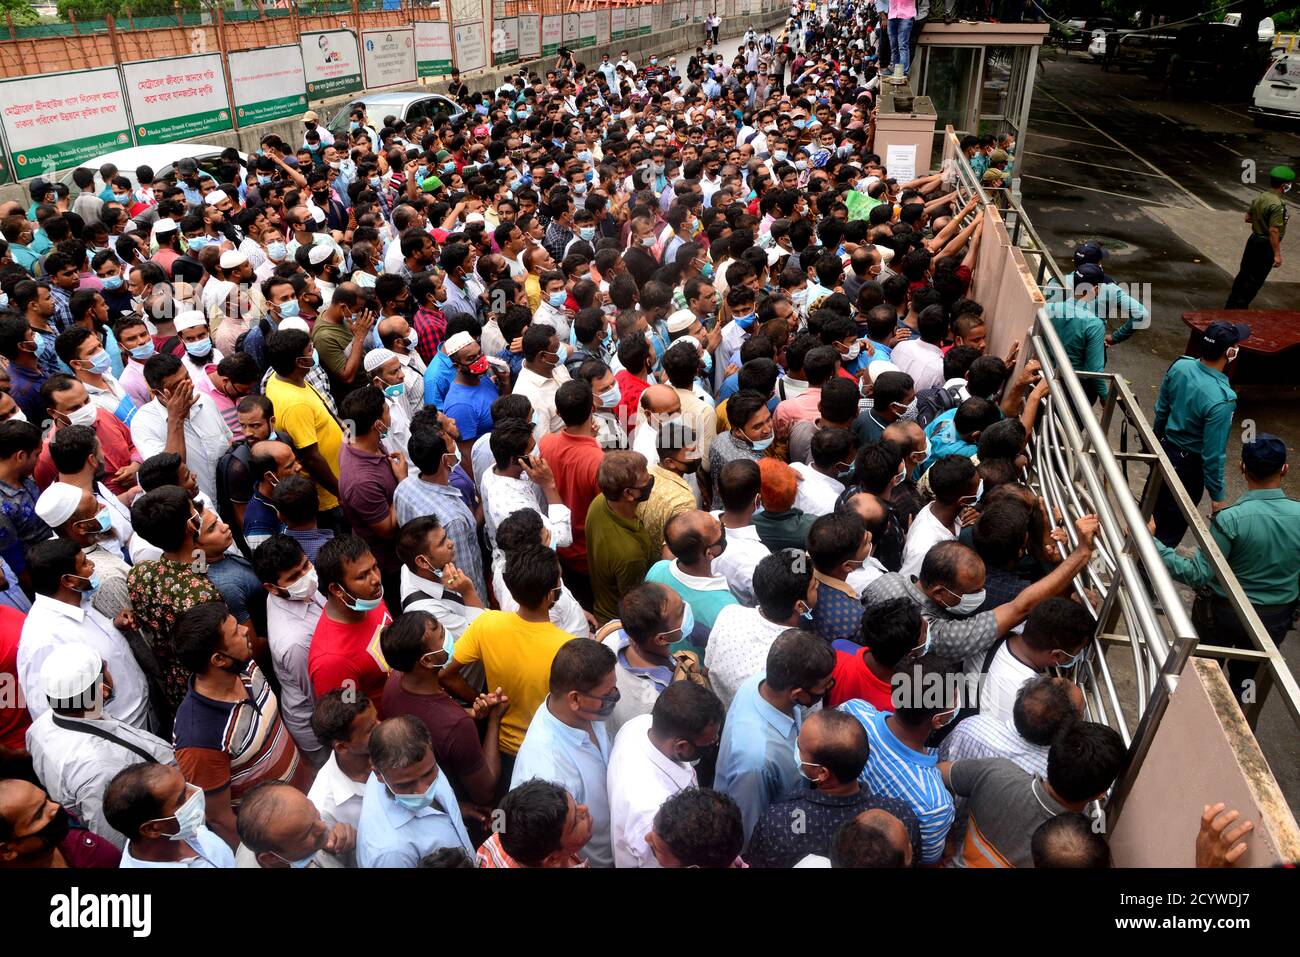 Lavoratori migranti che lavorano in Arabia Saudita dimostrazione di fronte all'ufficio Saudi Arabian Airlines chiedendo biglietti per tornare al loro posto di lavoro, dentro Foto Stock